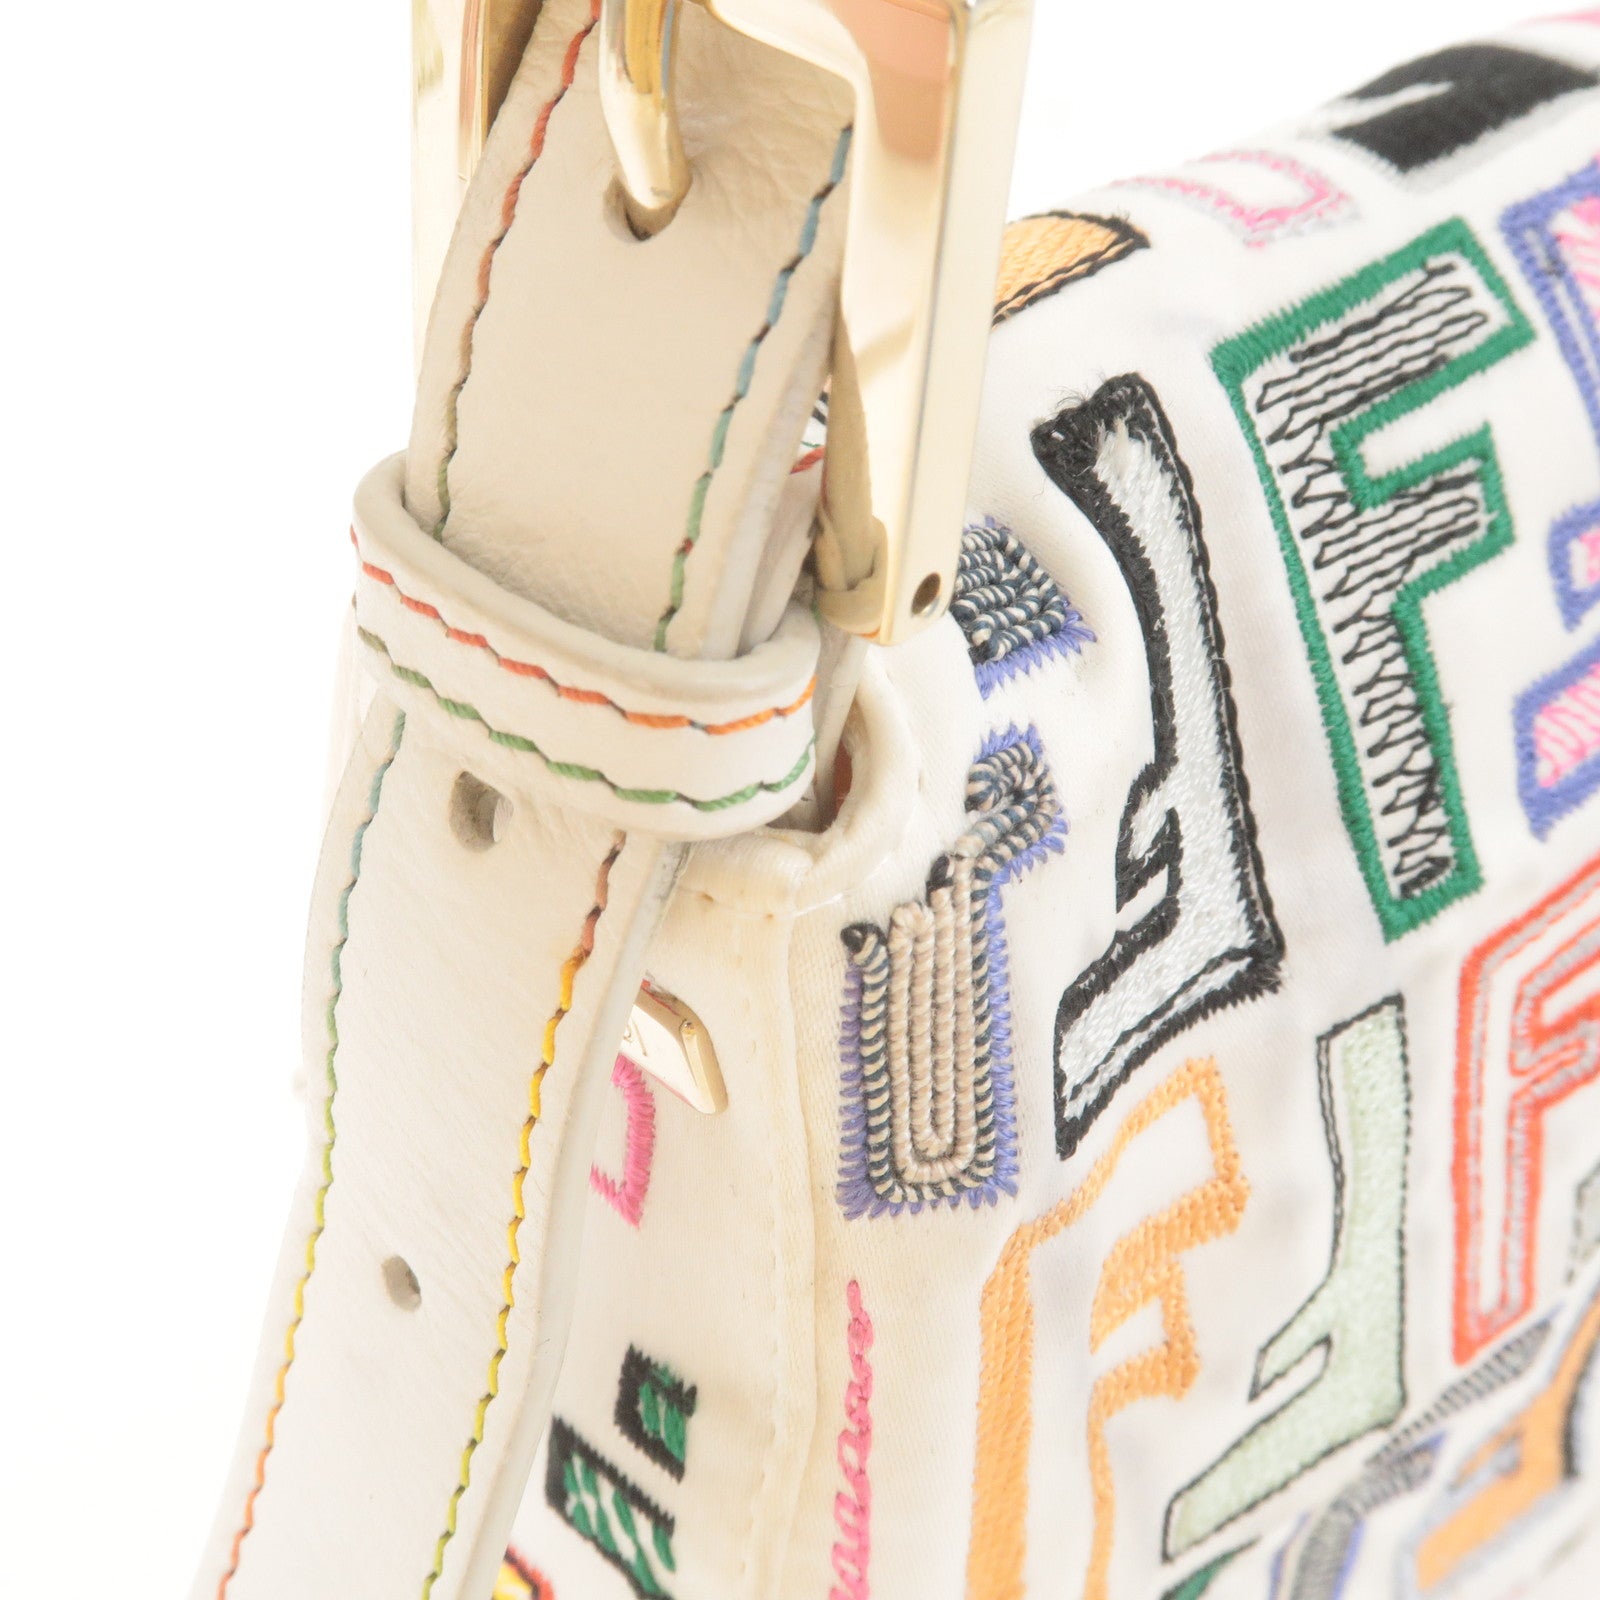 Fendi Baguette Bag Canvas Multicolor